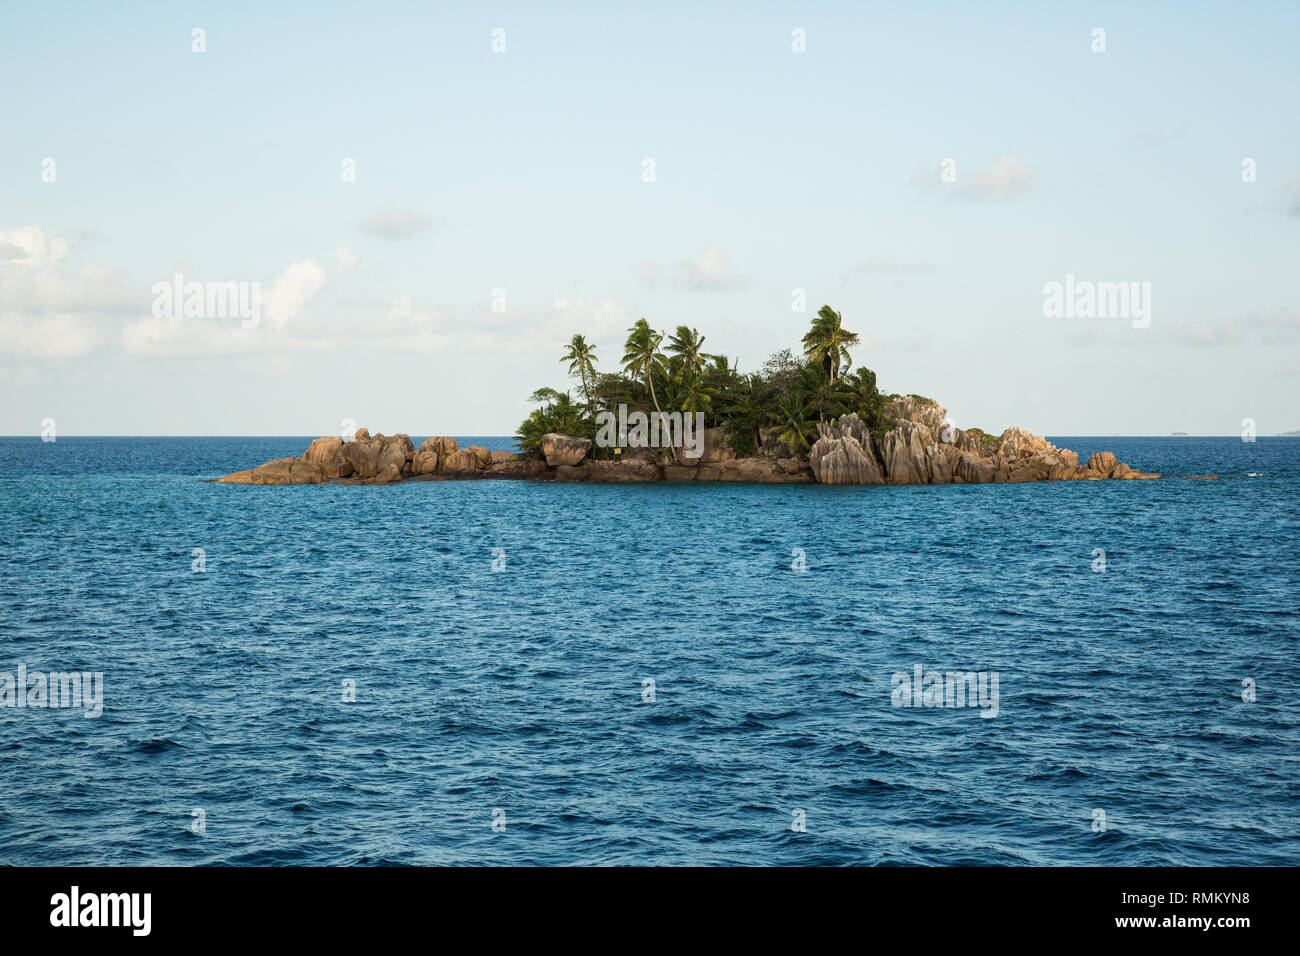 San Pierre è un isola sollevato reef isola a ovest di Providence Atoll e parte del gruppo di Farquhar, che appartiene per le isole lontane delle Seychelles Foto Stock